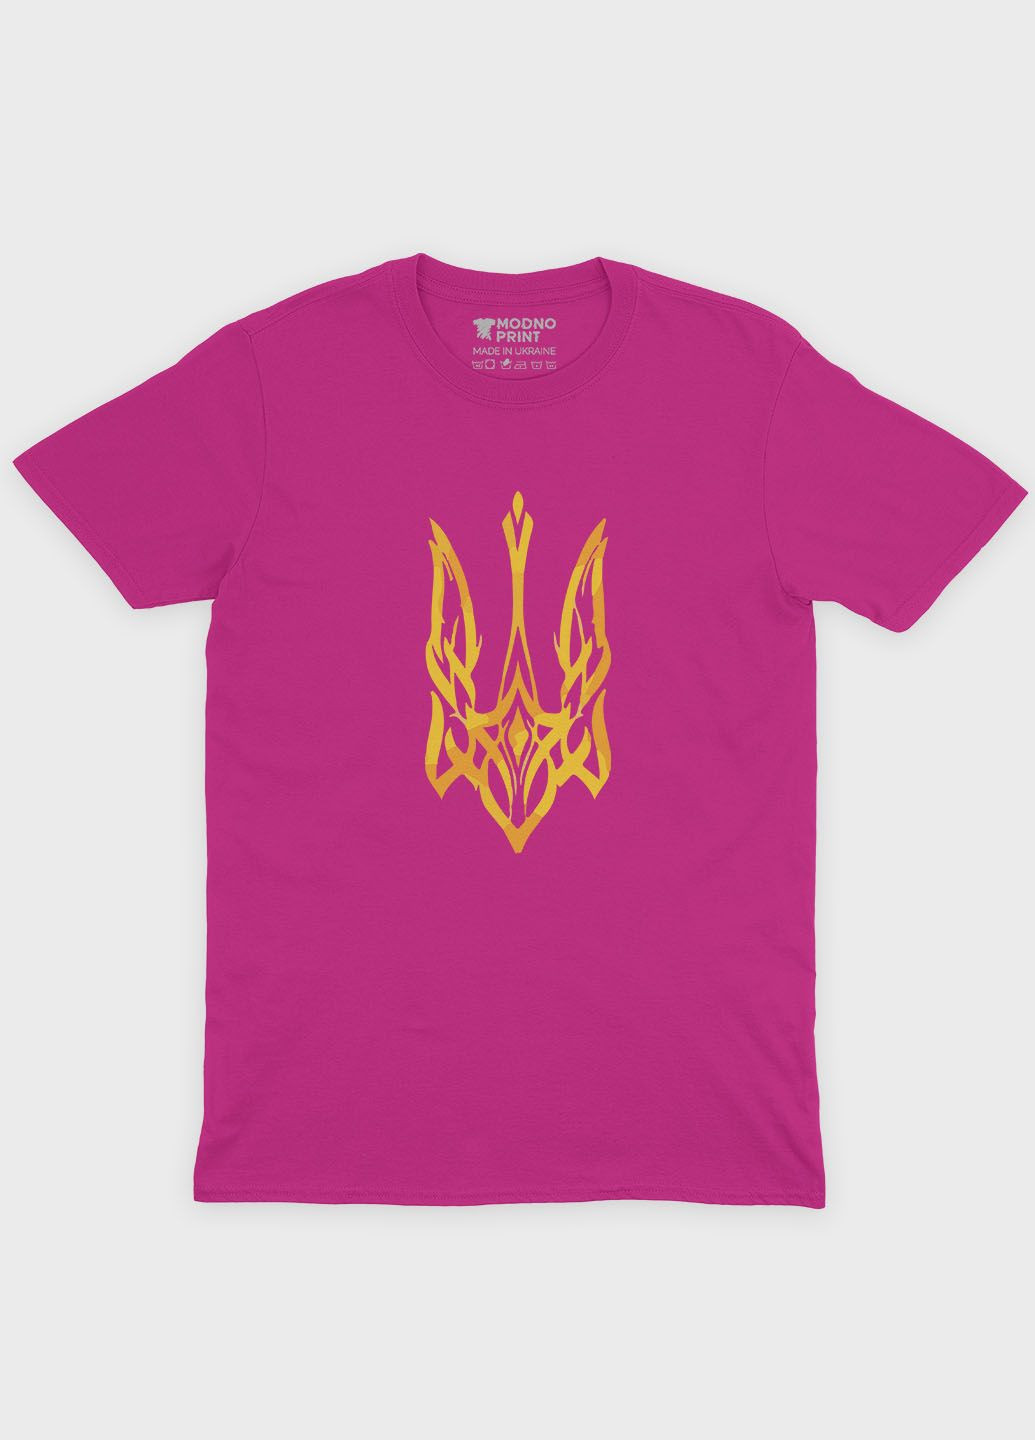 Розовая демисезонная футболка для мальчика с патриотическим принтом гербтризуб (ts001-1-fuxj-005-1-012) Modno